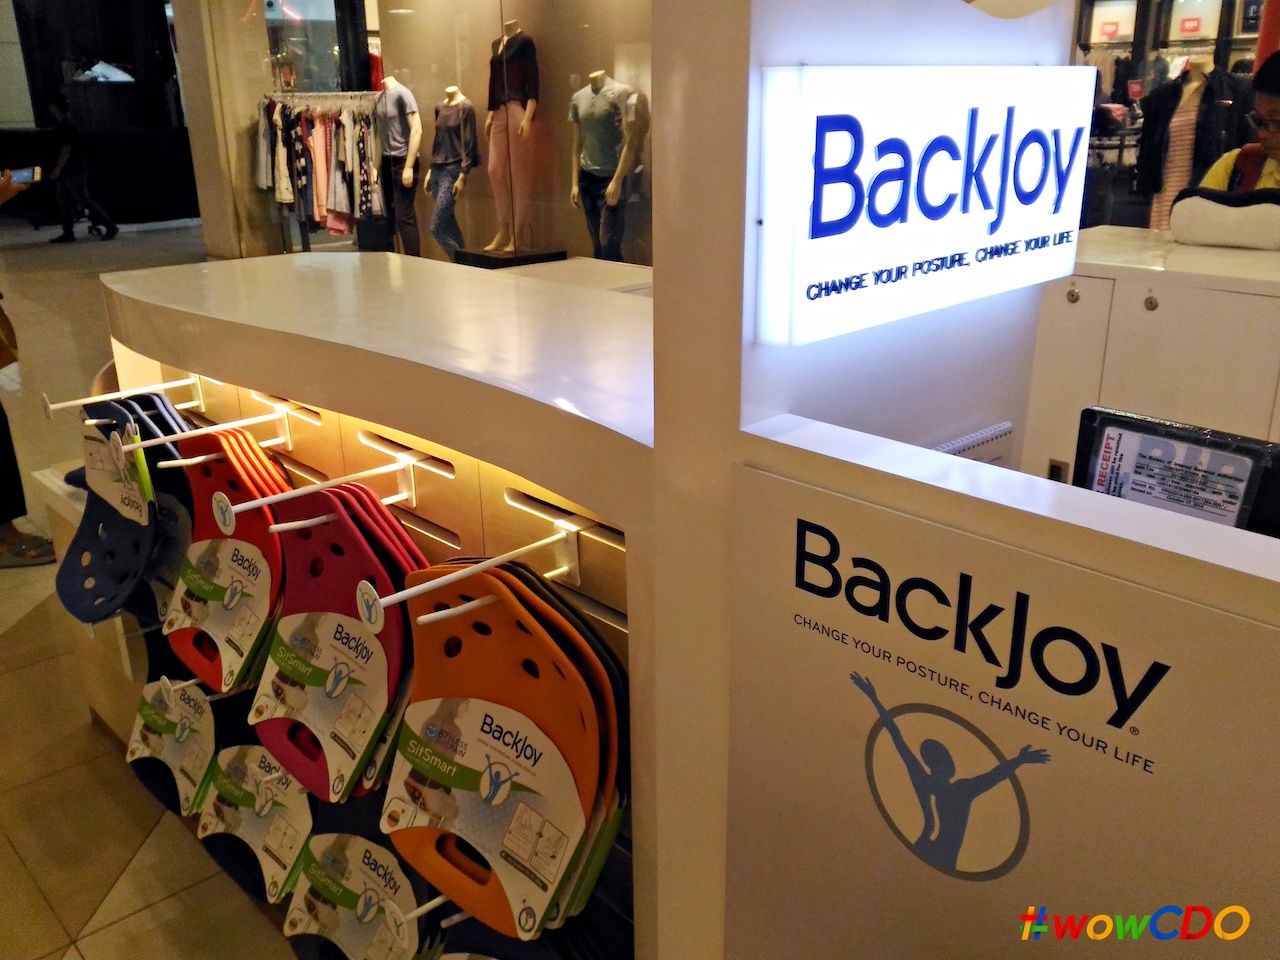 BackJoy kiosk at Centrio Mall.